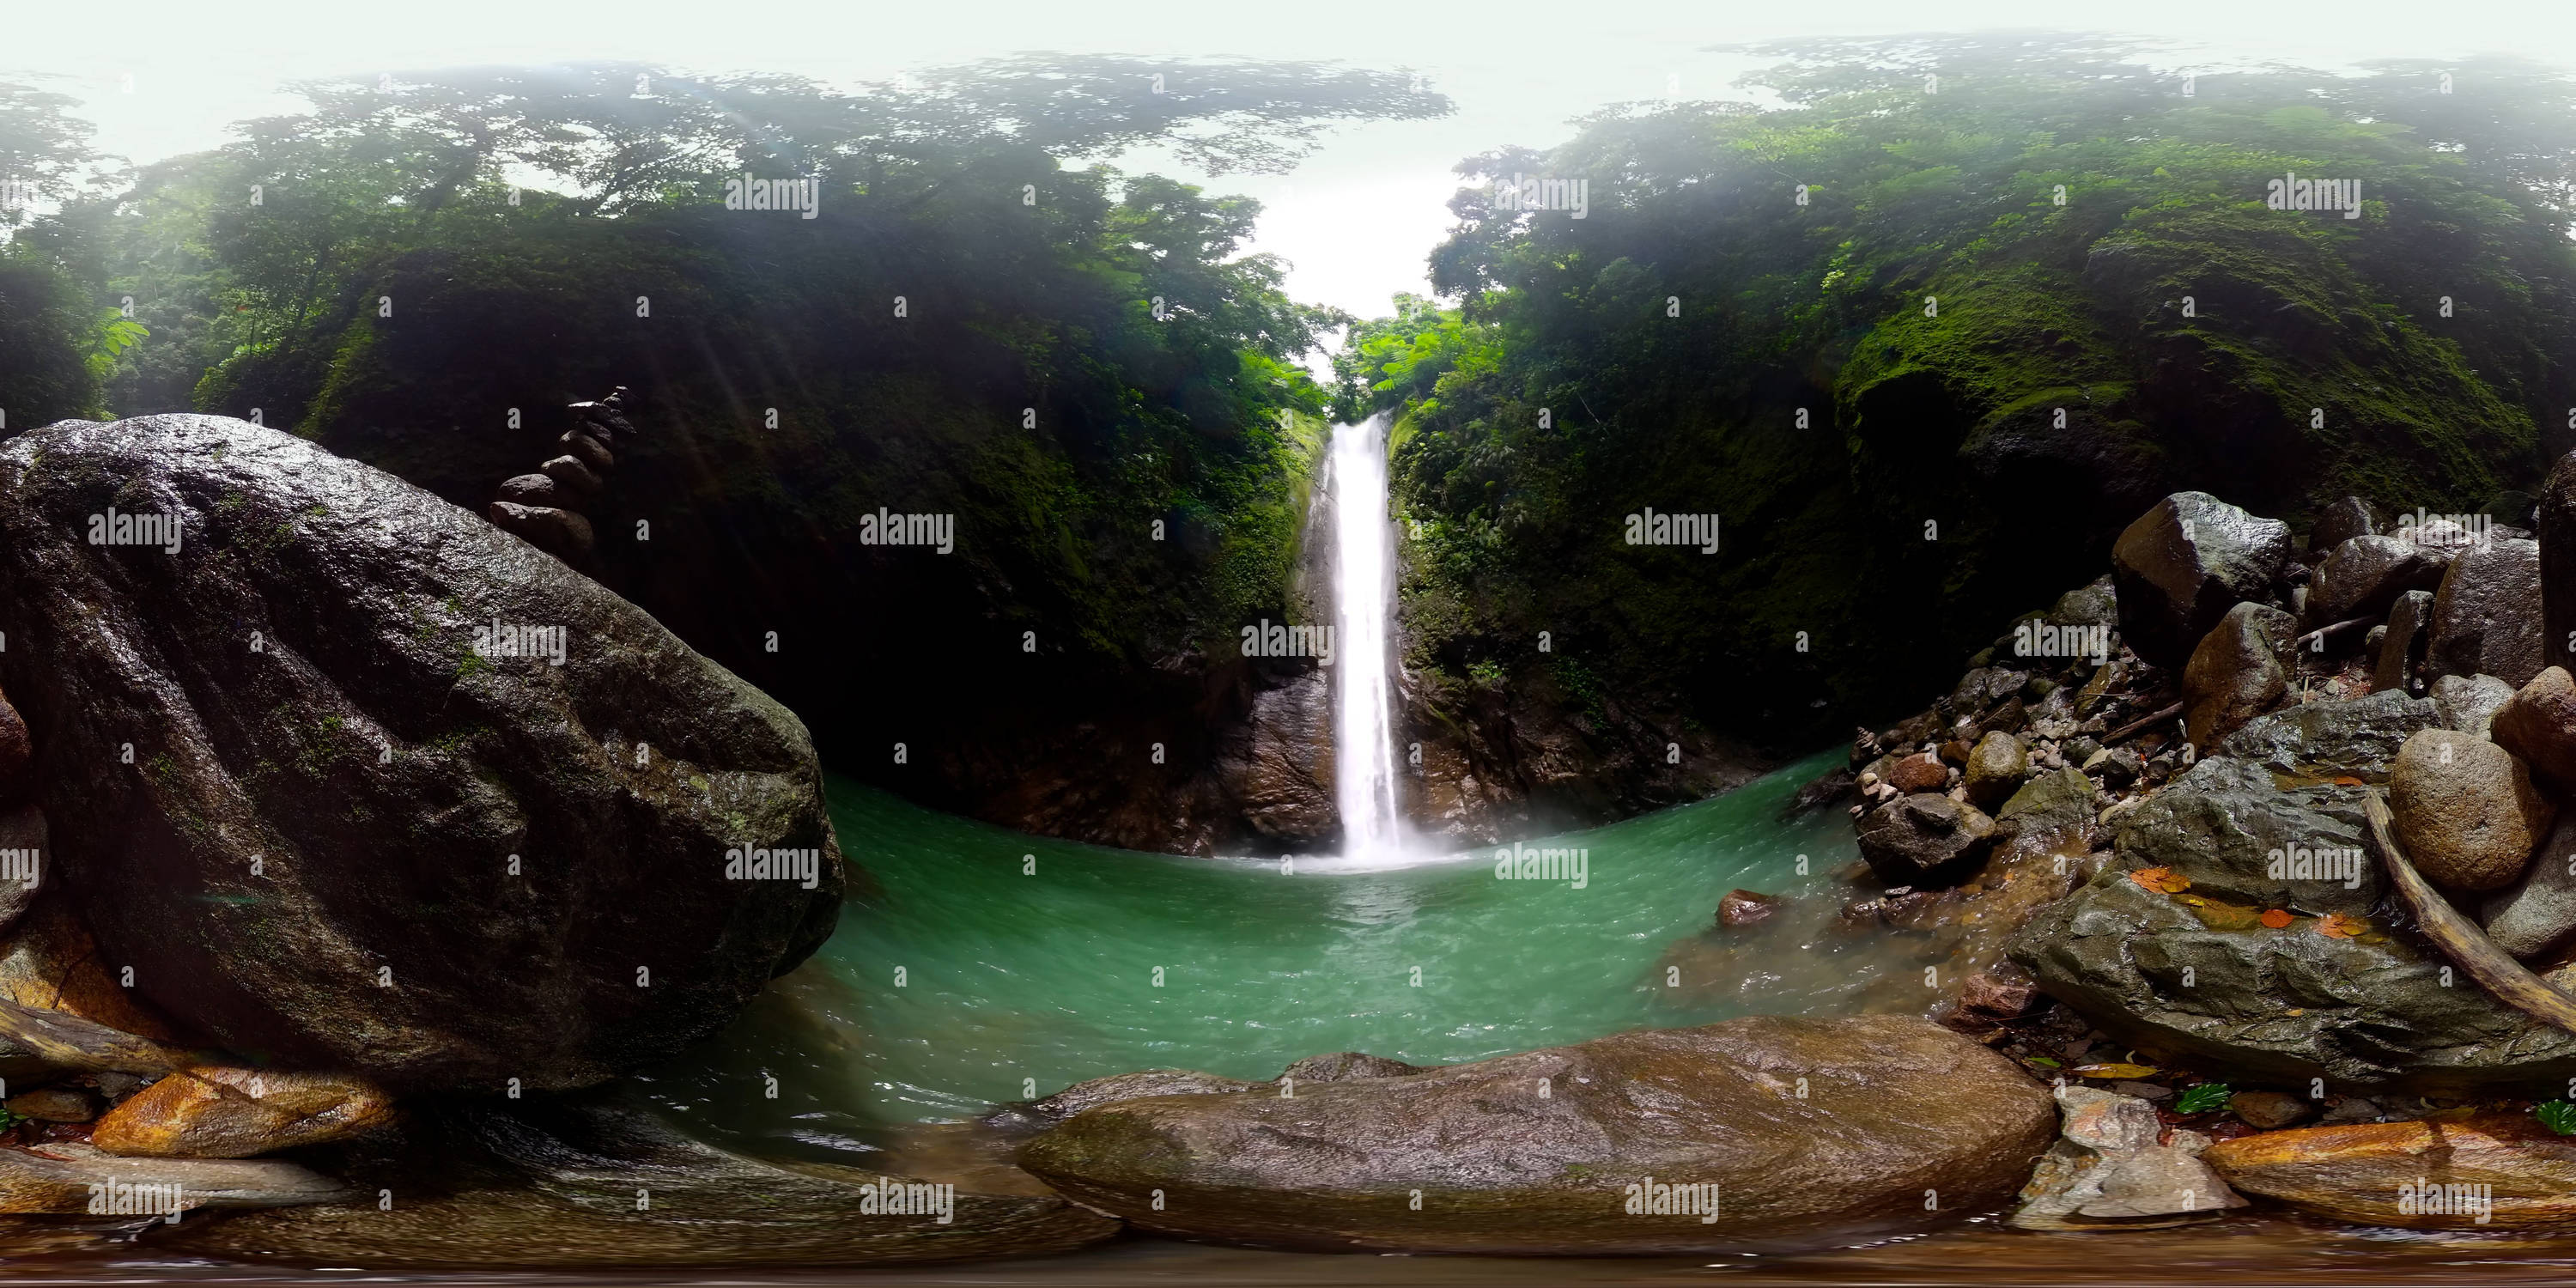 360 degree panoramic view of Casaroro Falls. Negros, Philippines.